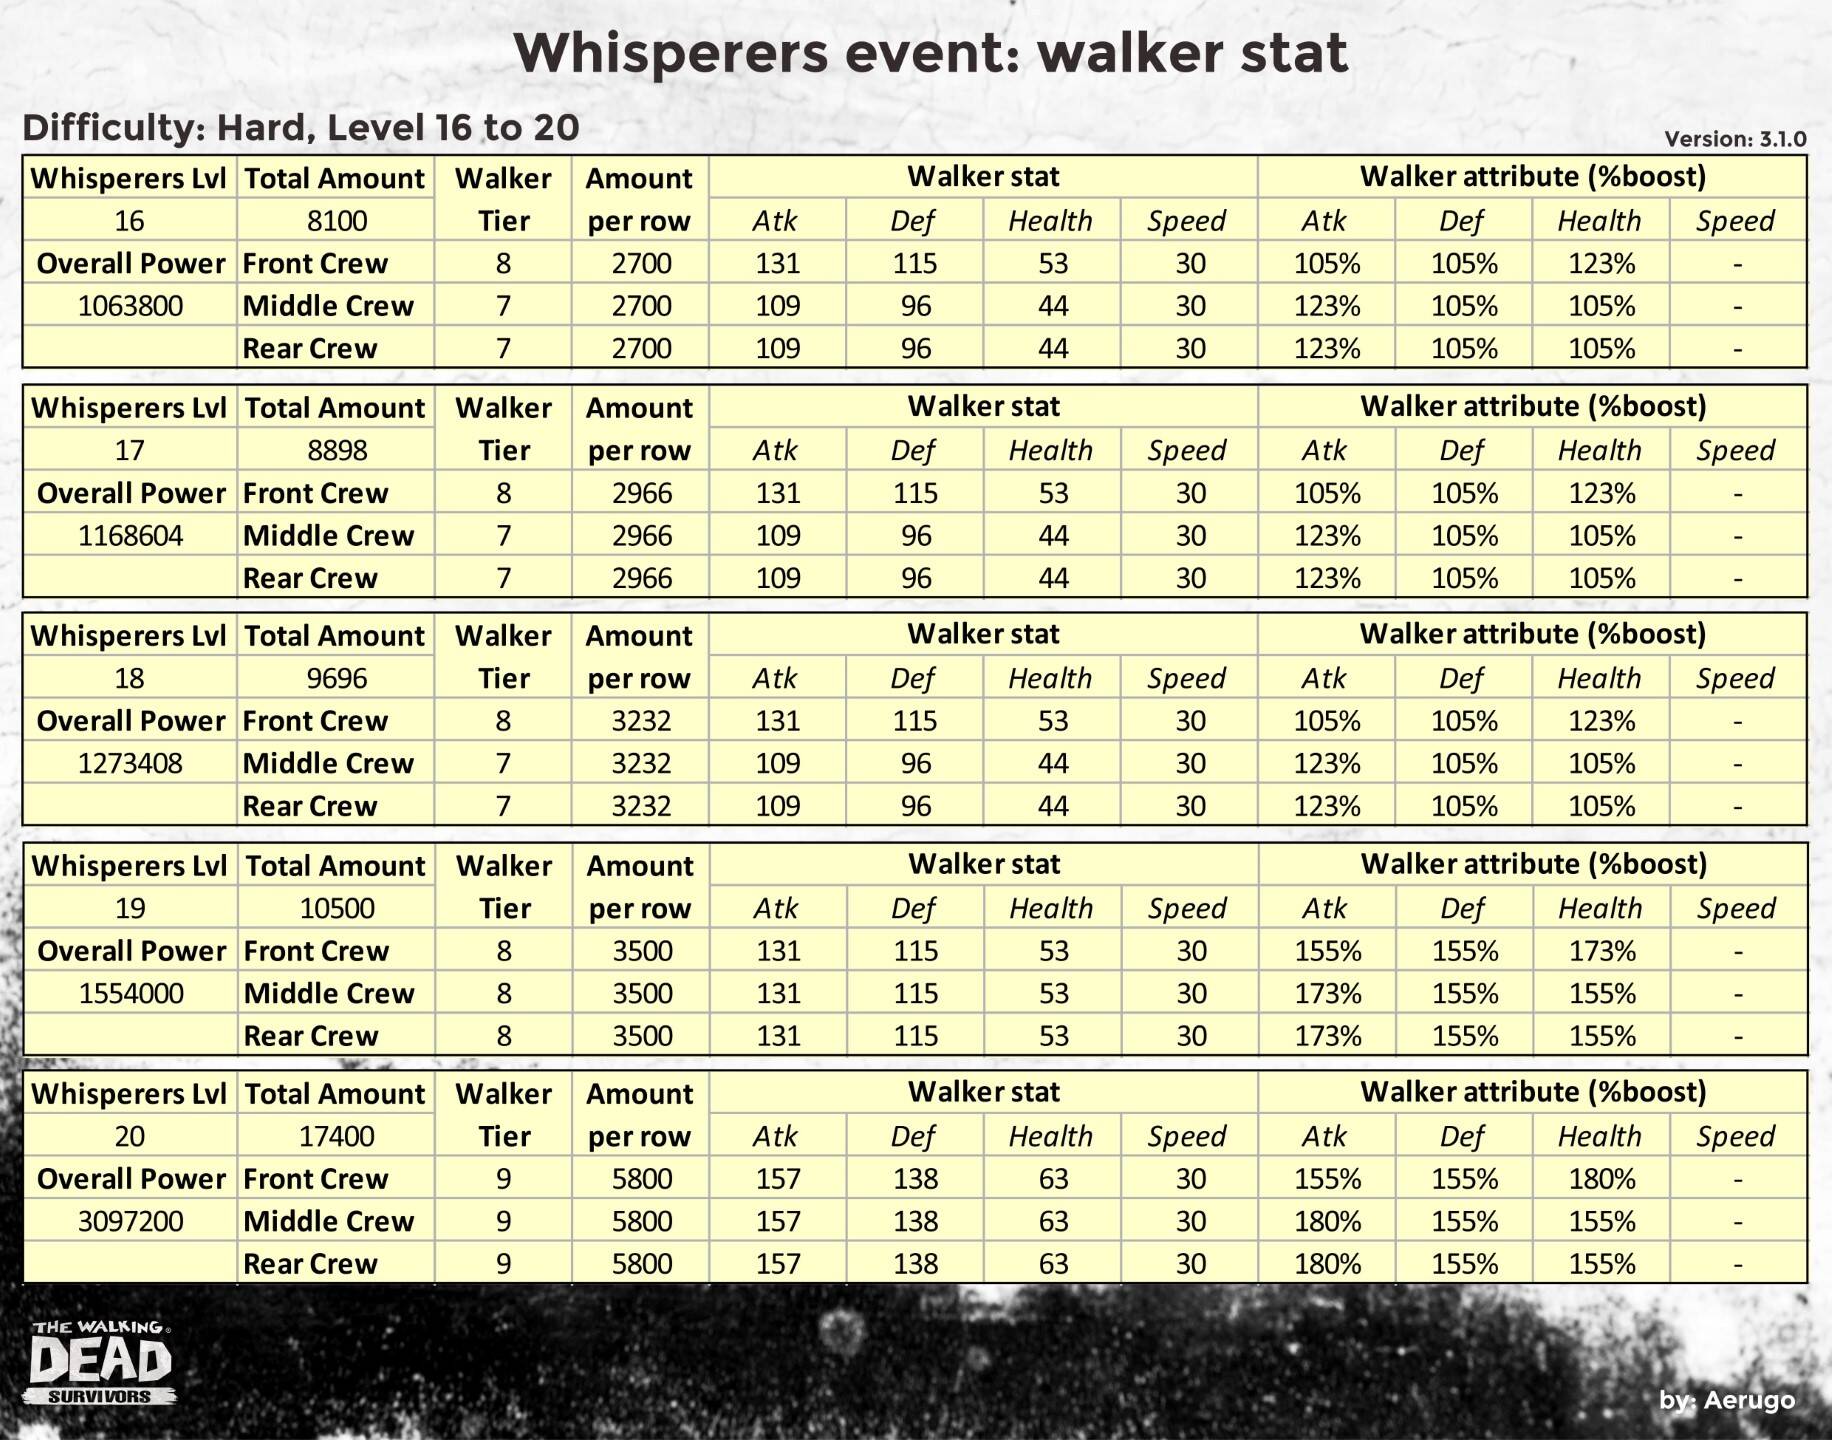 Whisperers_walkerstat_v3.1.0_part12 (1).jpg